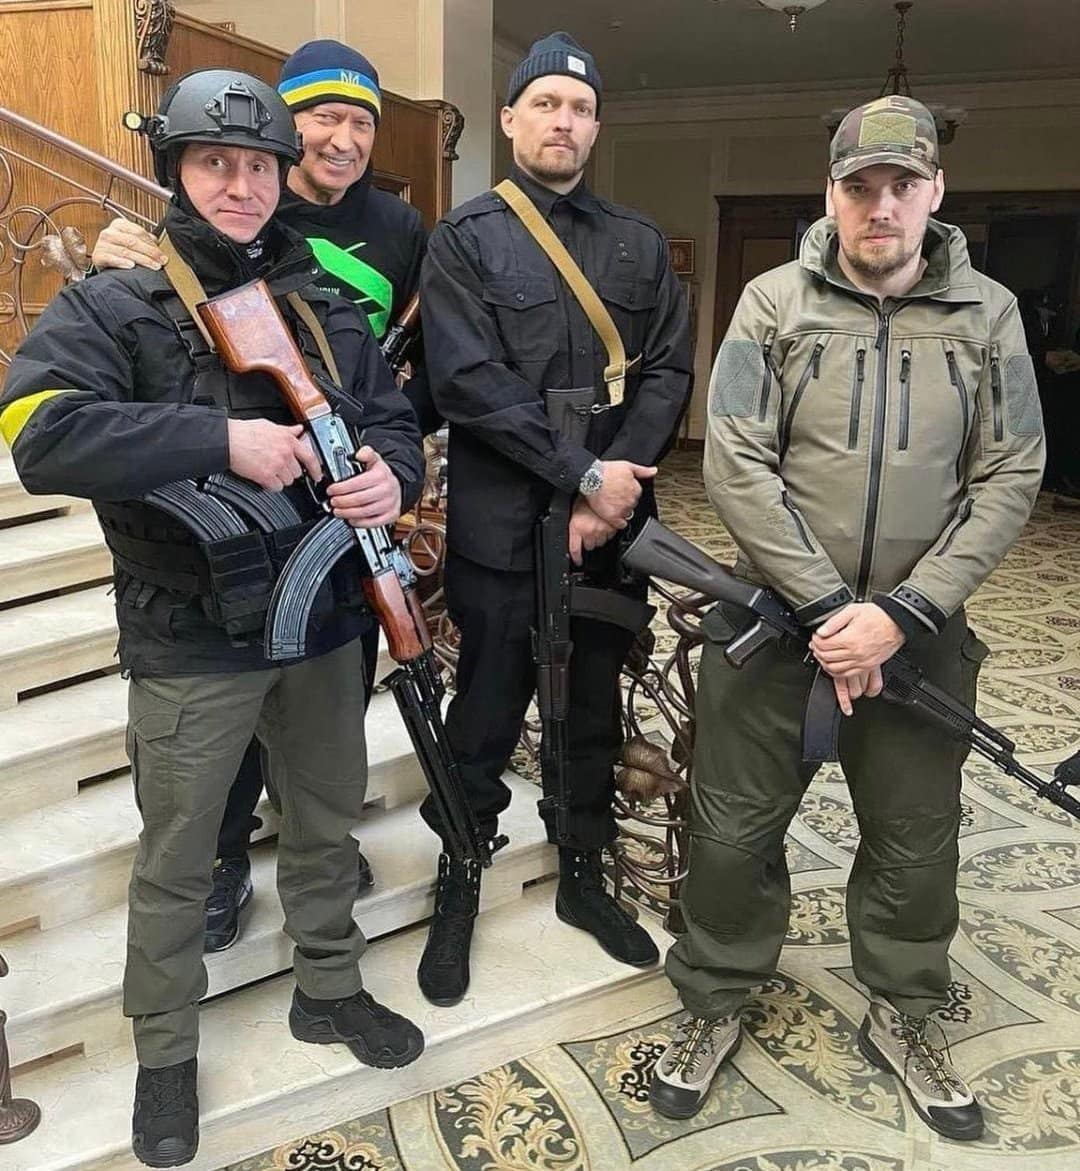 Nga ringu në luftë/ Boksieri kampion bote merr armën në Ukrainë: E kam për detyrë të mbroj vendin tim